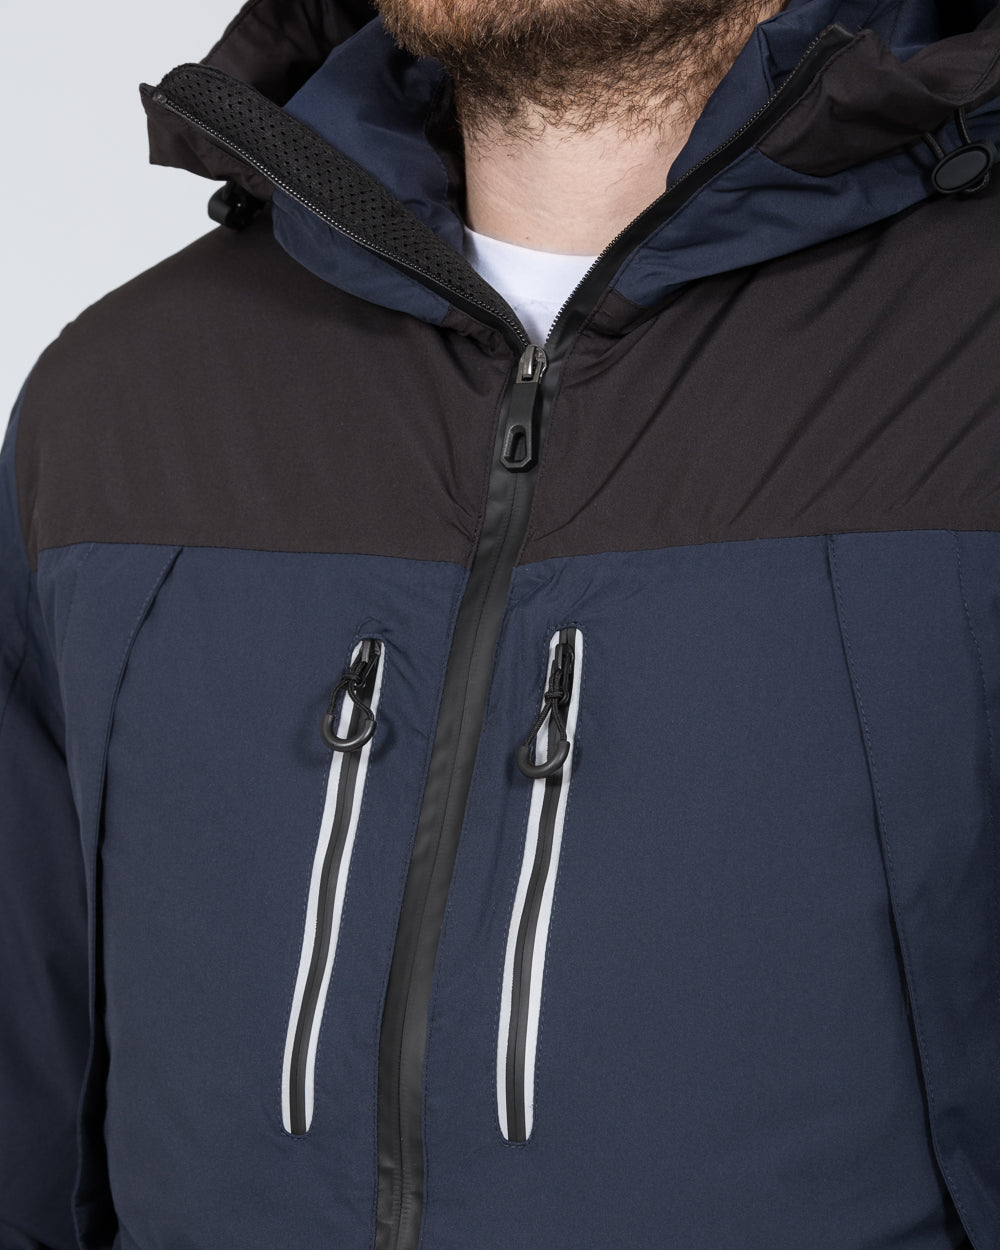 North 56 Tall Waterproof Ski Jacket (black/blue)